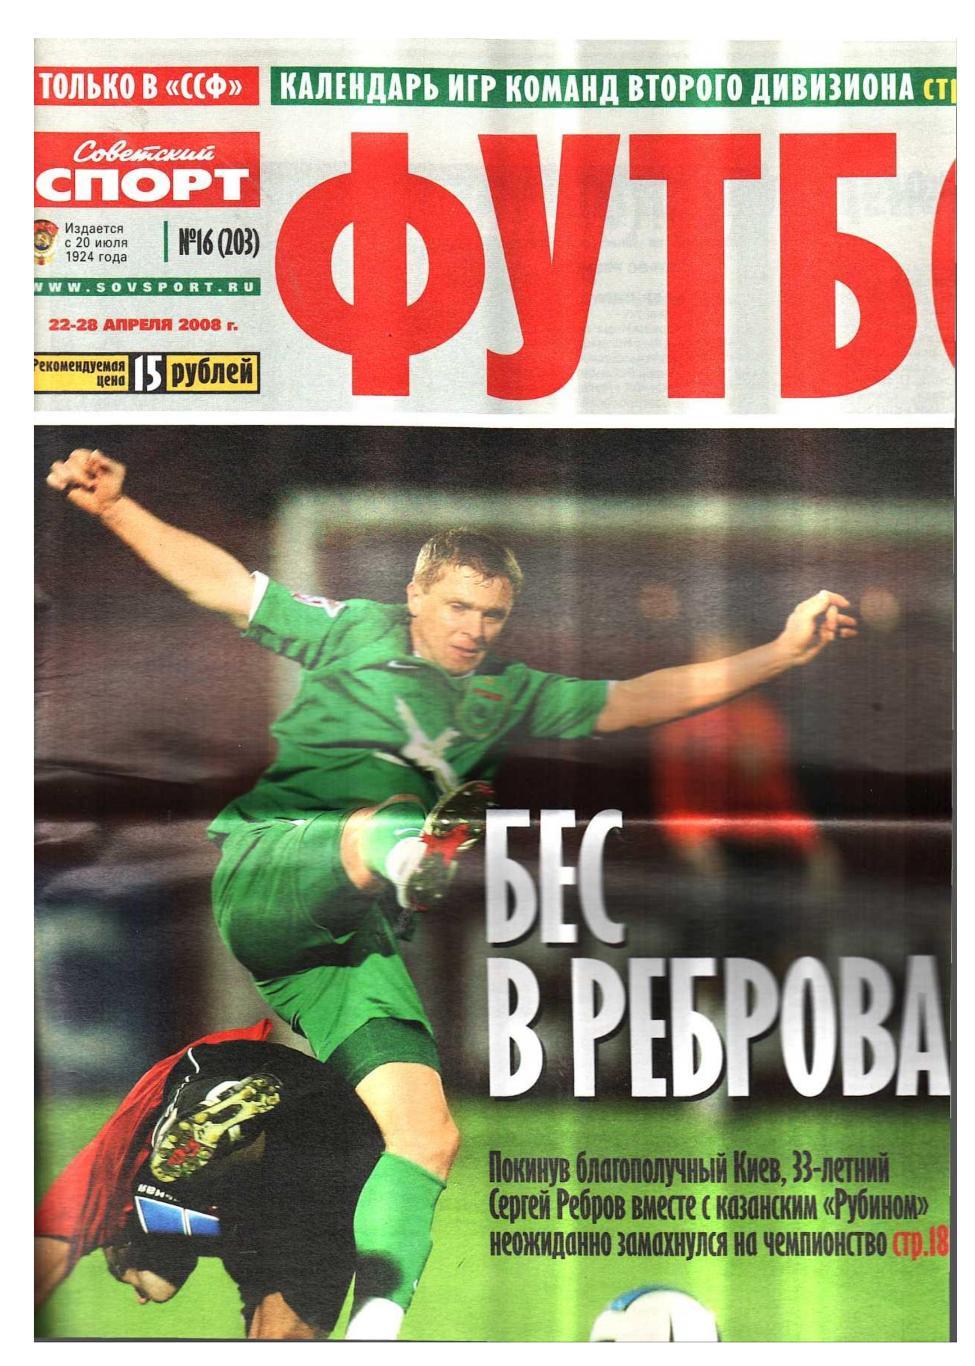 Футбол. Приложение к газете Советский спорт. 2008, № 16, 22–28 апреля.